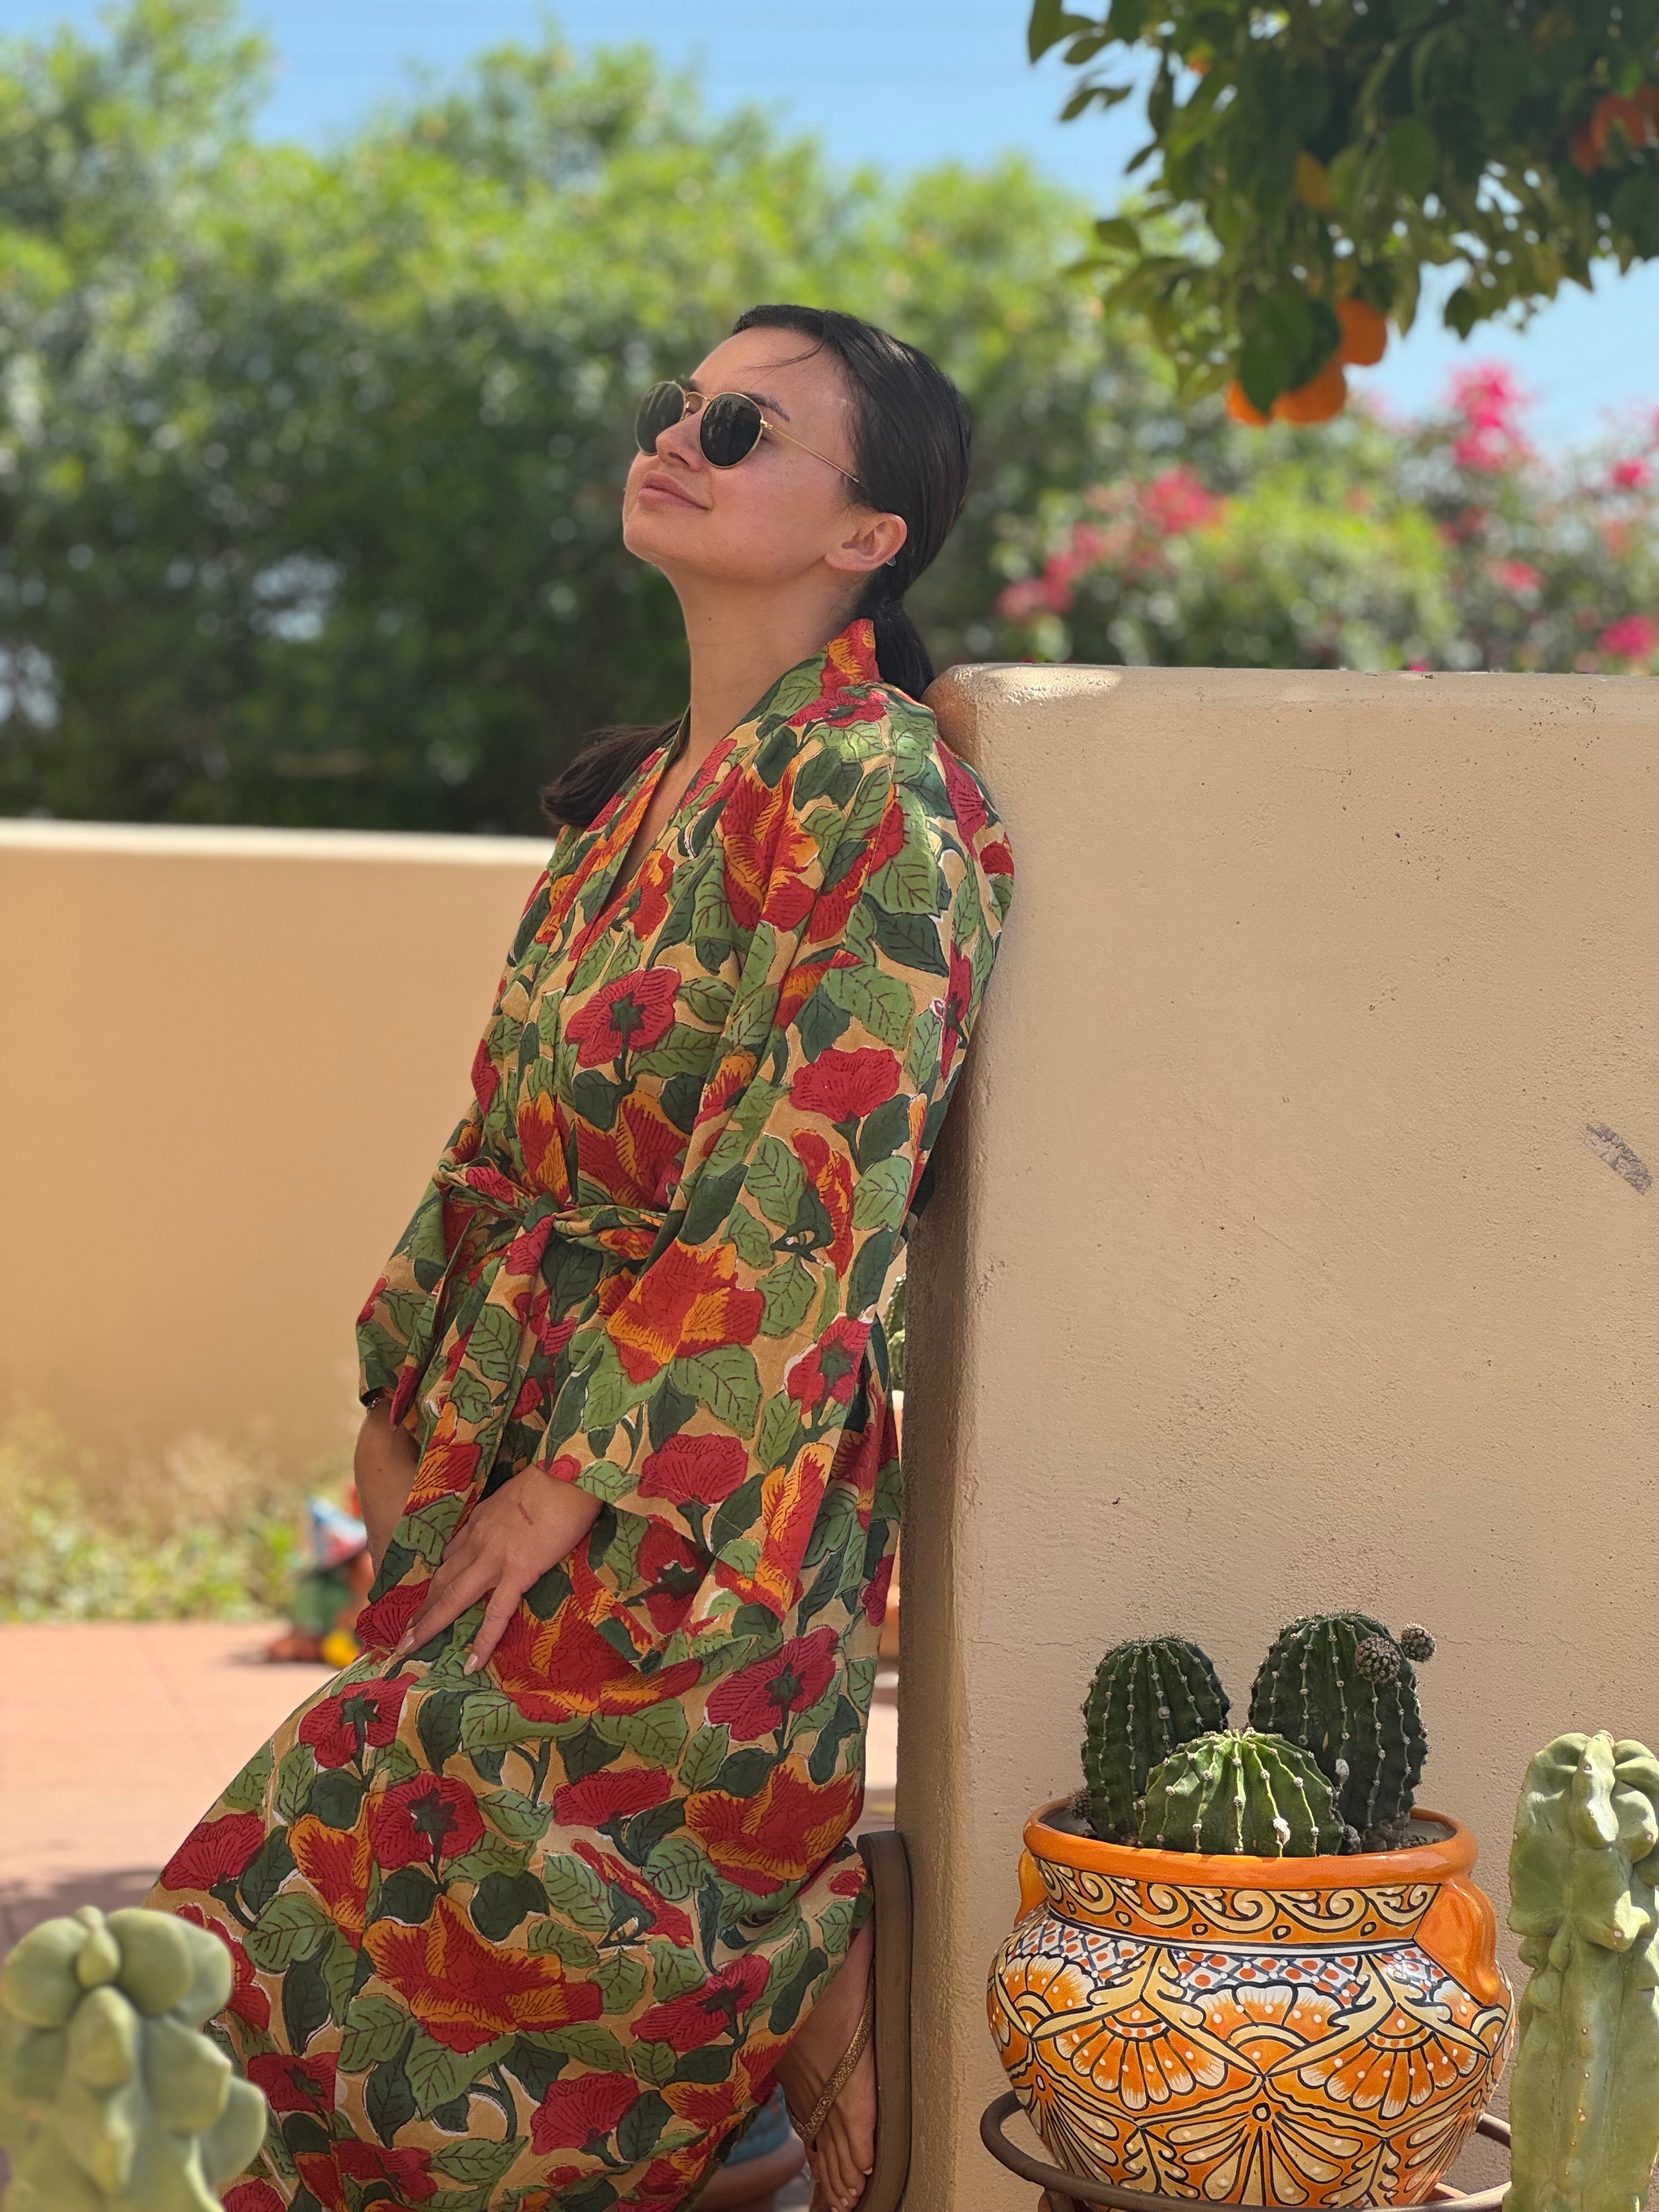 Frida Floral Cotton Dress Robe ON BACKORDER 2-4 WEEKS